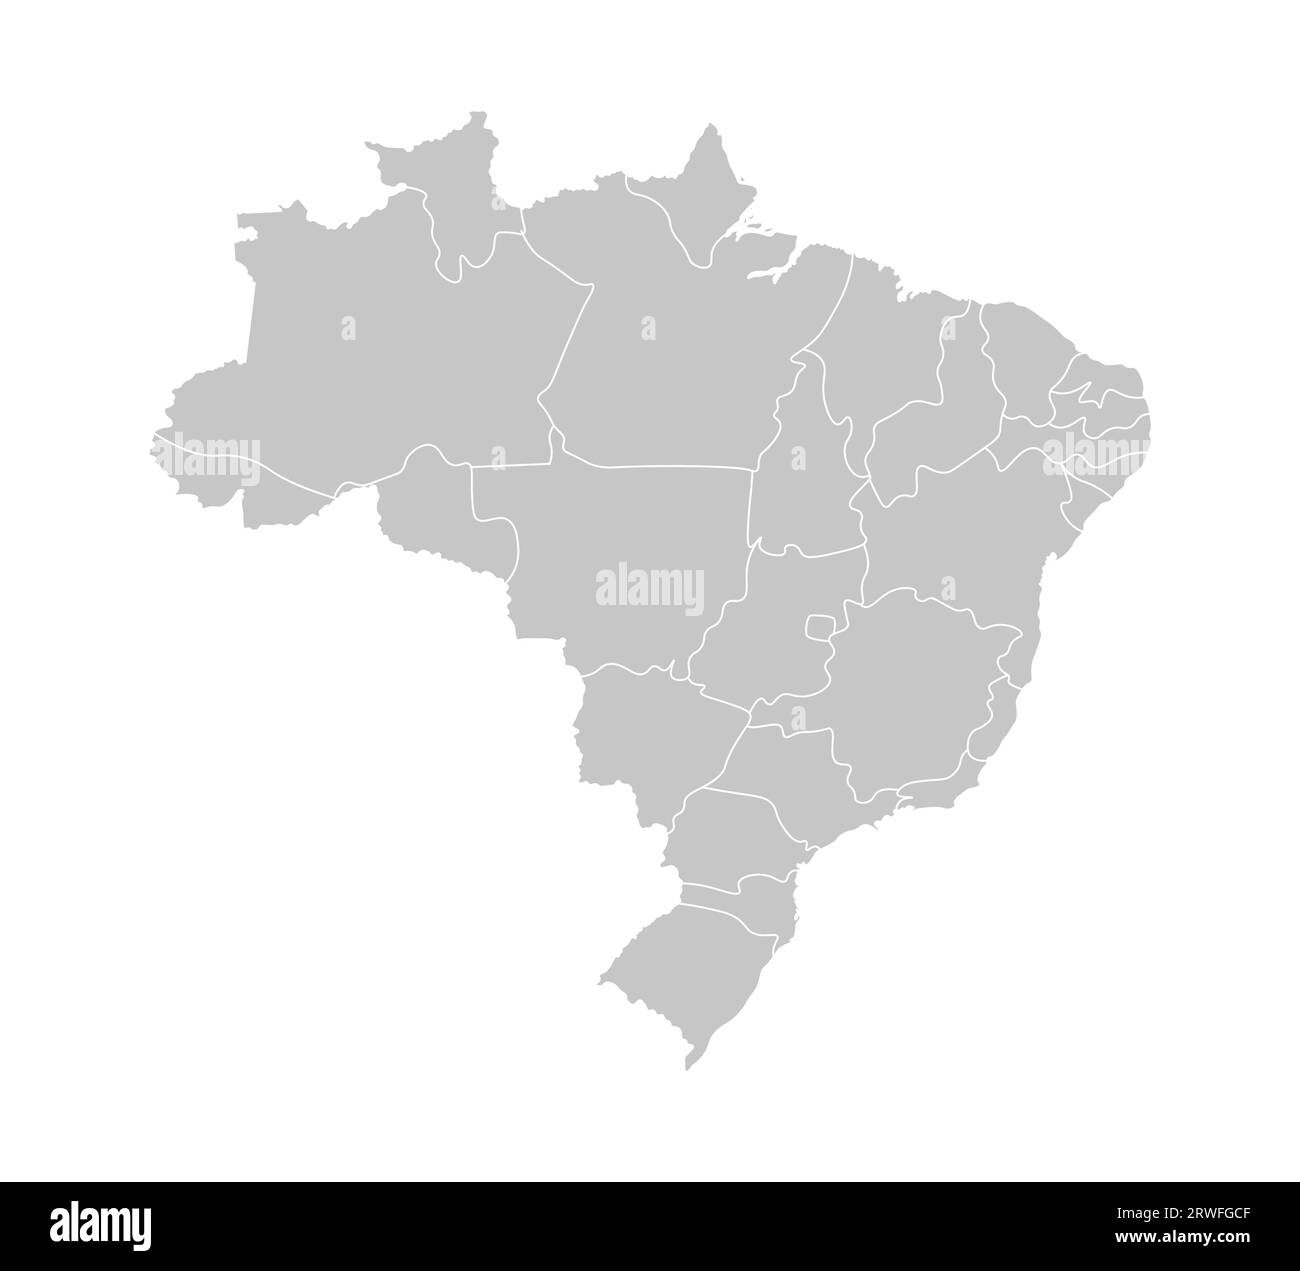 Illustrazione vettoriale isolata della mappa amministrativa semplificata del Brasile. Confini delle province (regioni). Silhouette grigie. Contorno bianco. Illustrazione Vettoriale